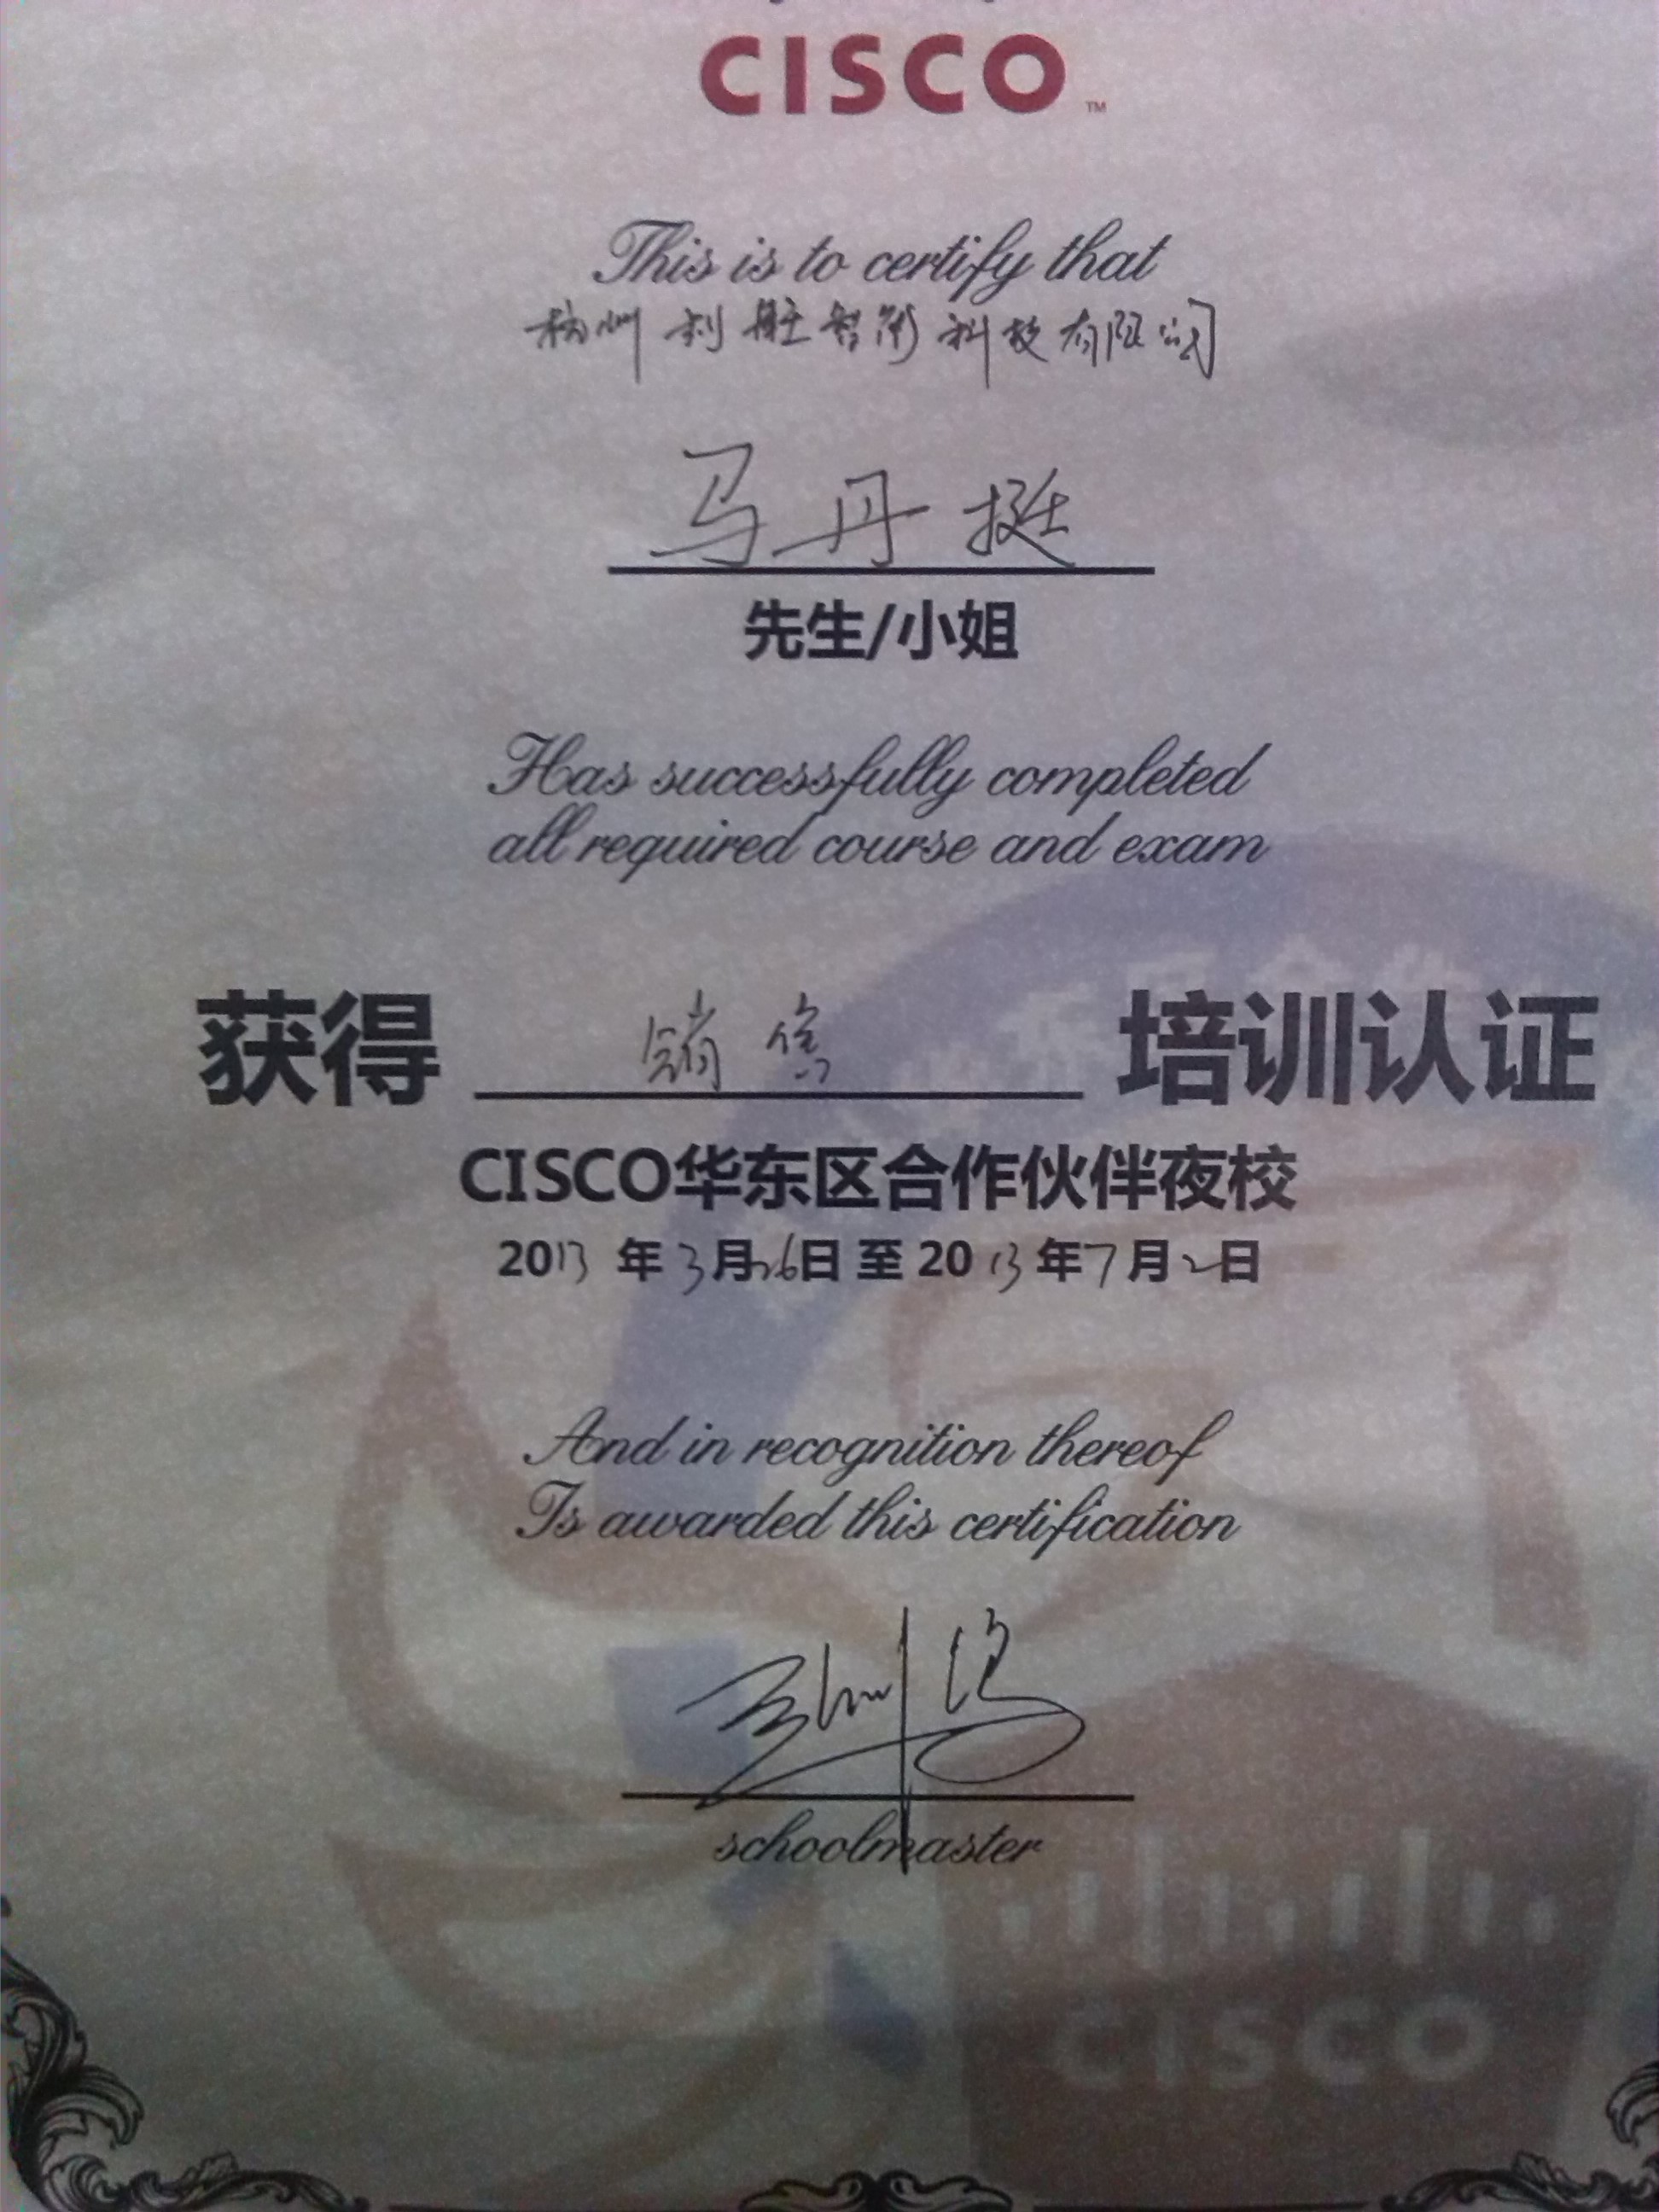 CISCO思科高清视频会议认证证书